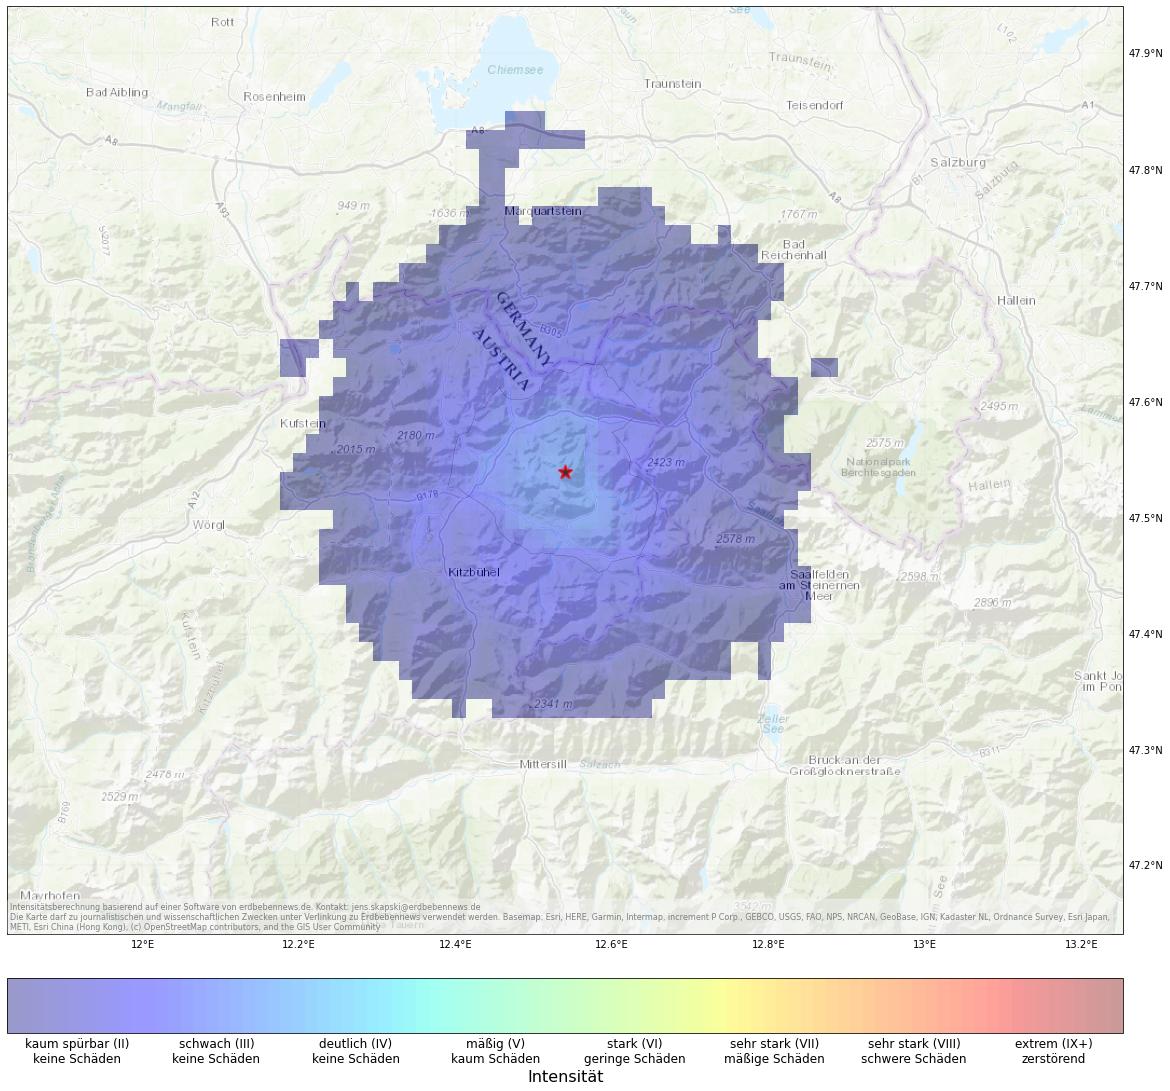 Berechnete Intensität (ShakeMap) des Erdbebens der Stärke 3.3 am 18. Januar, 1:42 Uhr in Österreich